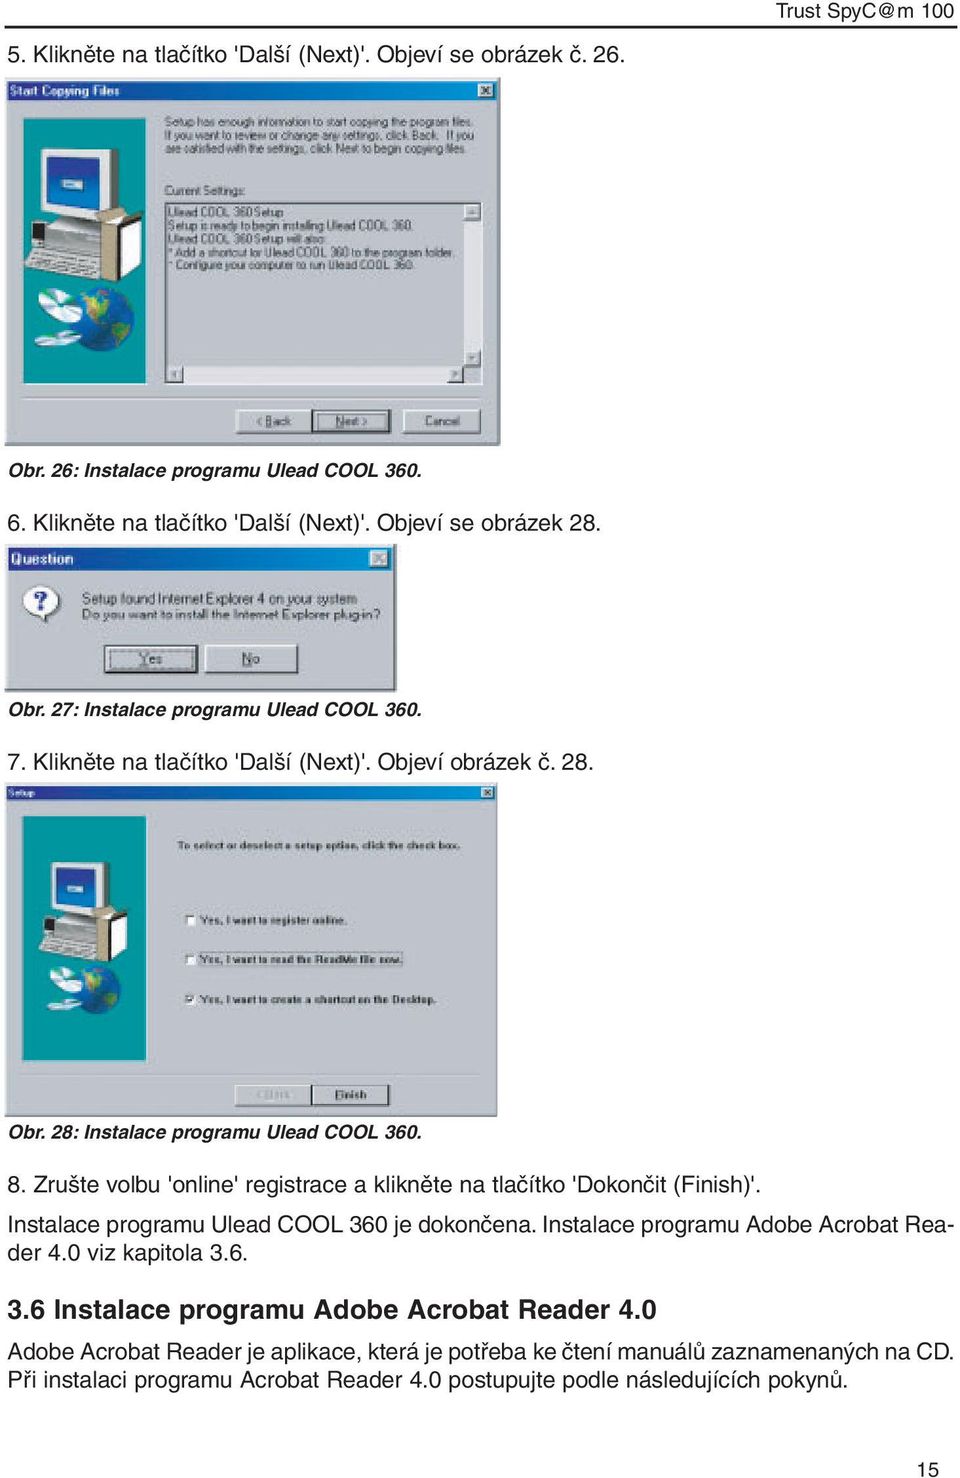 Zrušte volbu 'online' registrace a klikněte na tlačítko 'Dokončit (Finish)'. Instalace programu Ulead COOL 360 je dokončena. Instalace programu Adobe Acrobat Reader 4.